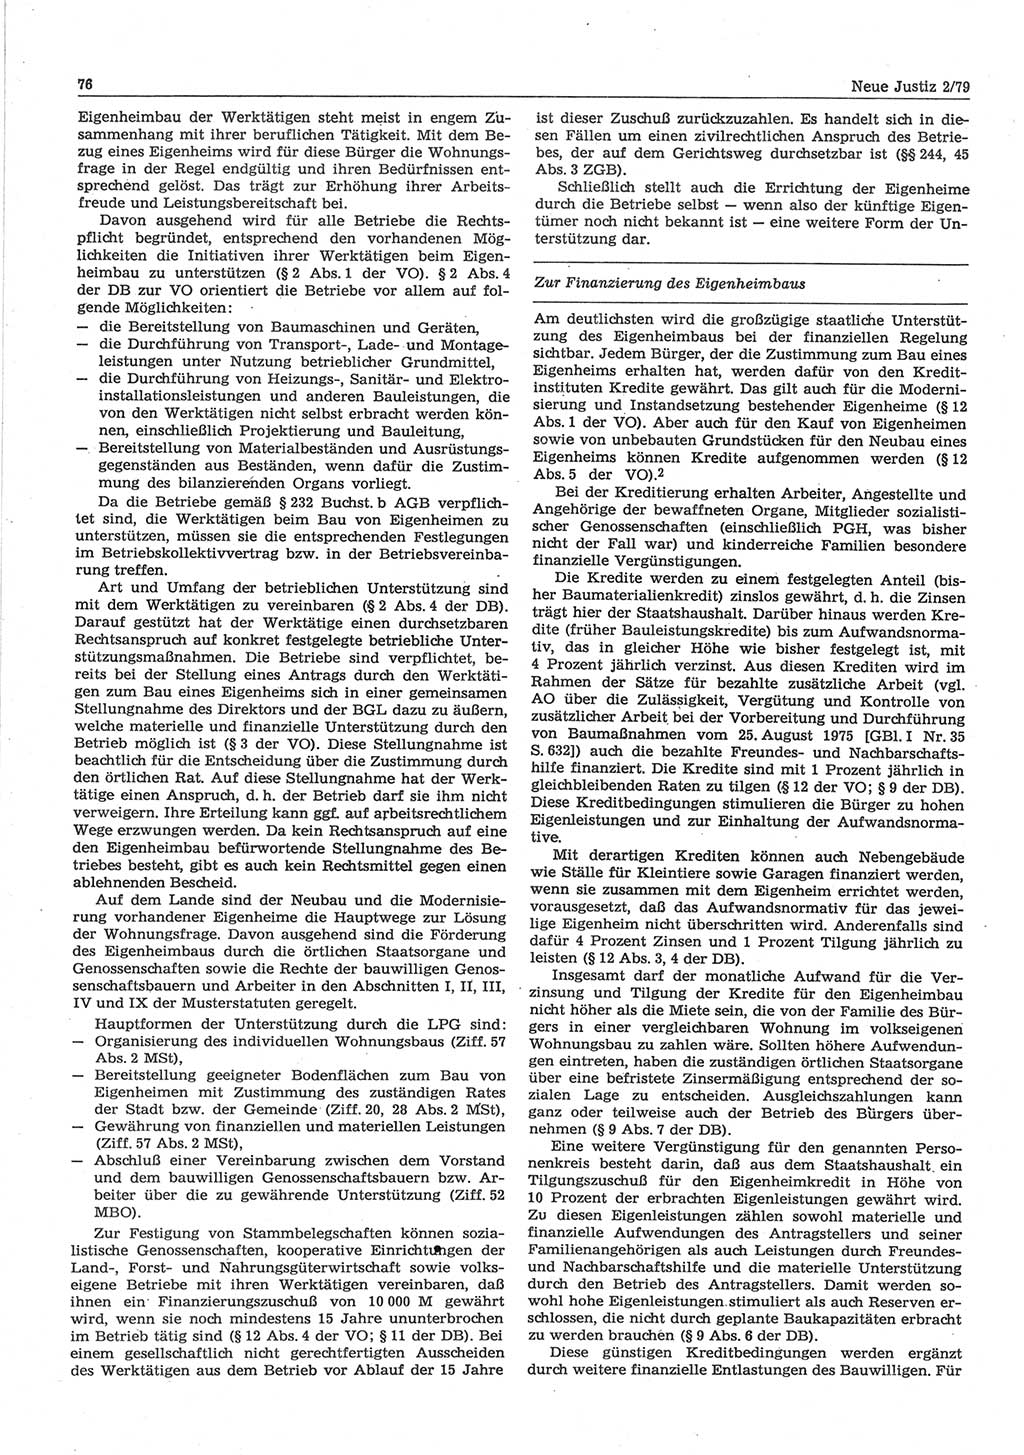 Neue Justiz (NJ), Zeitschrift für sozialistisches Recht und Gesetzlichkeit [Deutsche Demokratische Republik (DDR)], 33. Jahrgang 1979, Seite 76 (NJ DDR 1979, S. 76)